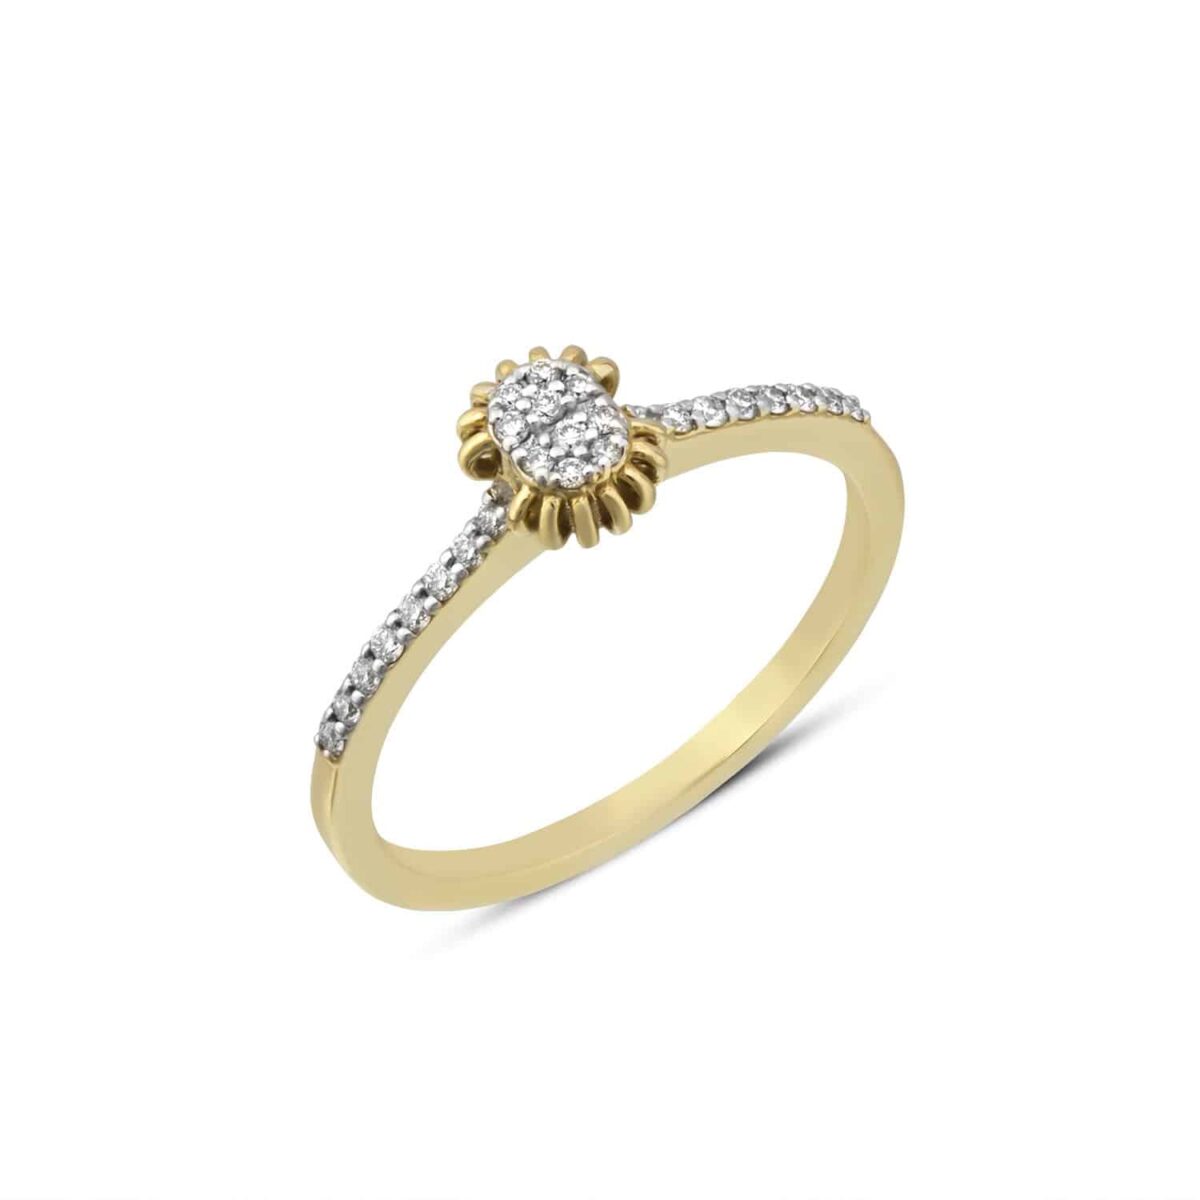 Eliptical Sunny Full Diamond Ring